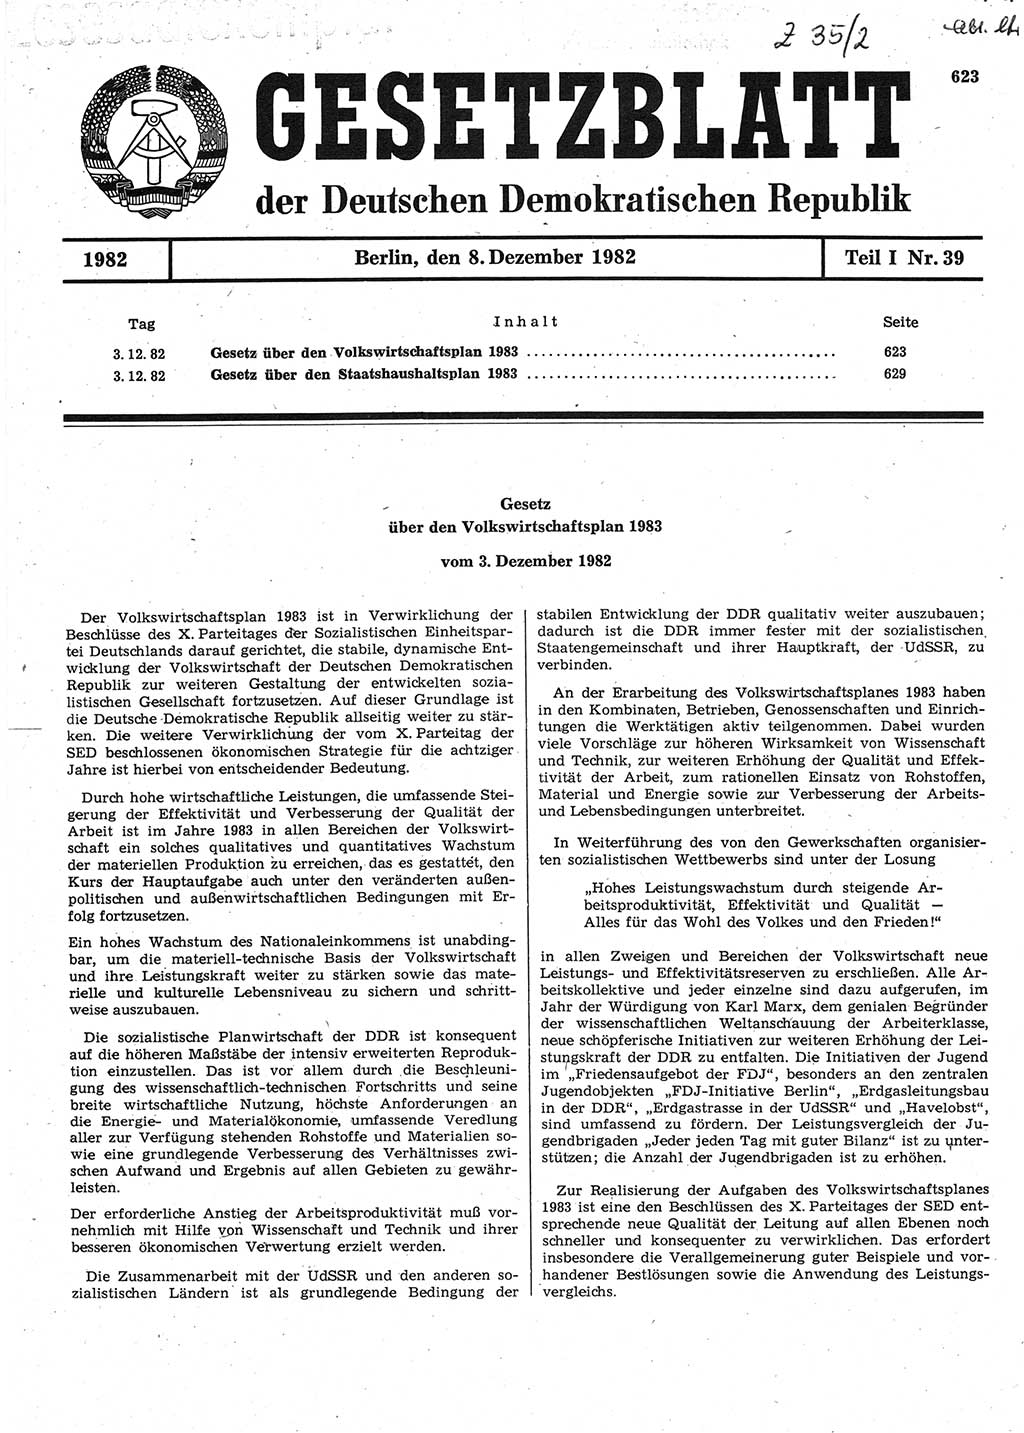 Gesetzblatt (GBl.) der Deutschen Demokratischen Republik (DDR) Teil Ⅰ 1982, Seite 623 (GBl. DDR Ⅰ 1982, S. 623)